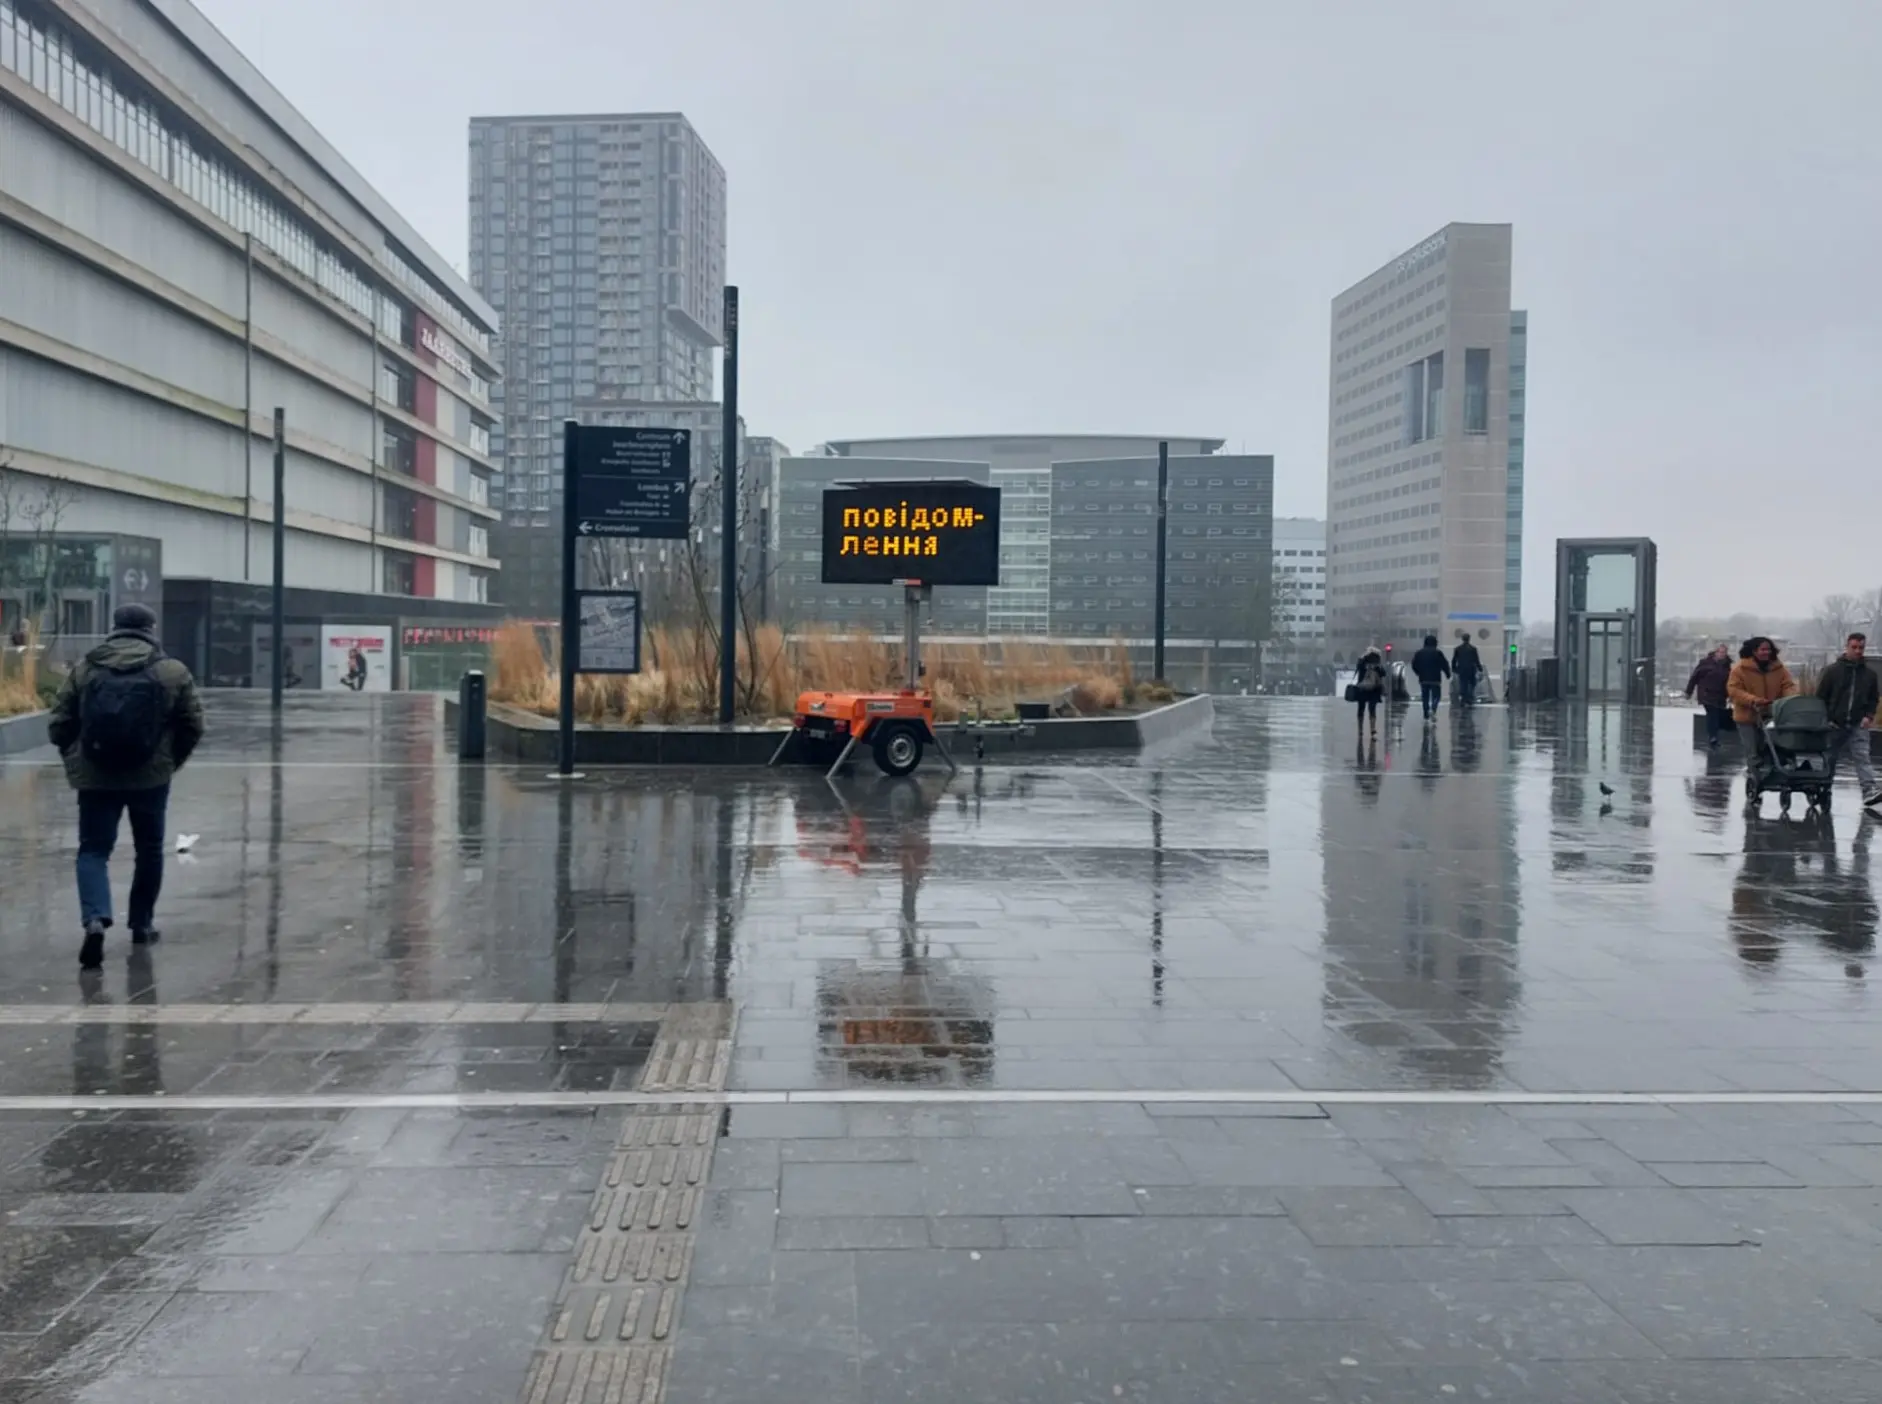 Указатель в сторону регистрационного пункта на железнодорожном вокзале Utrecht Centraal. 